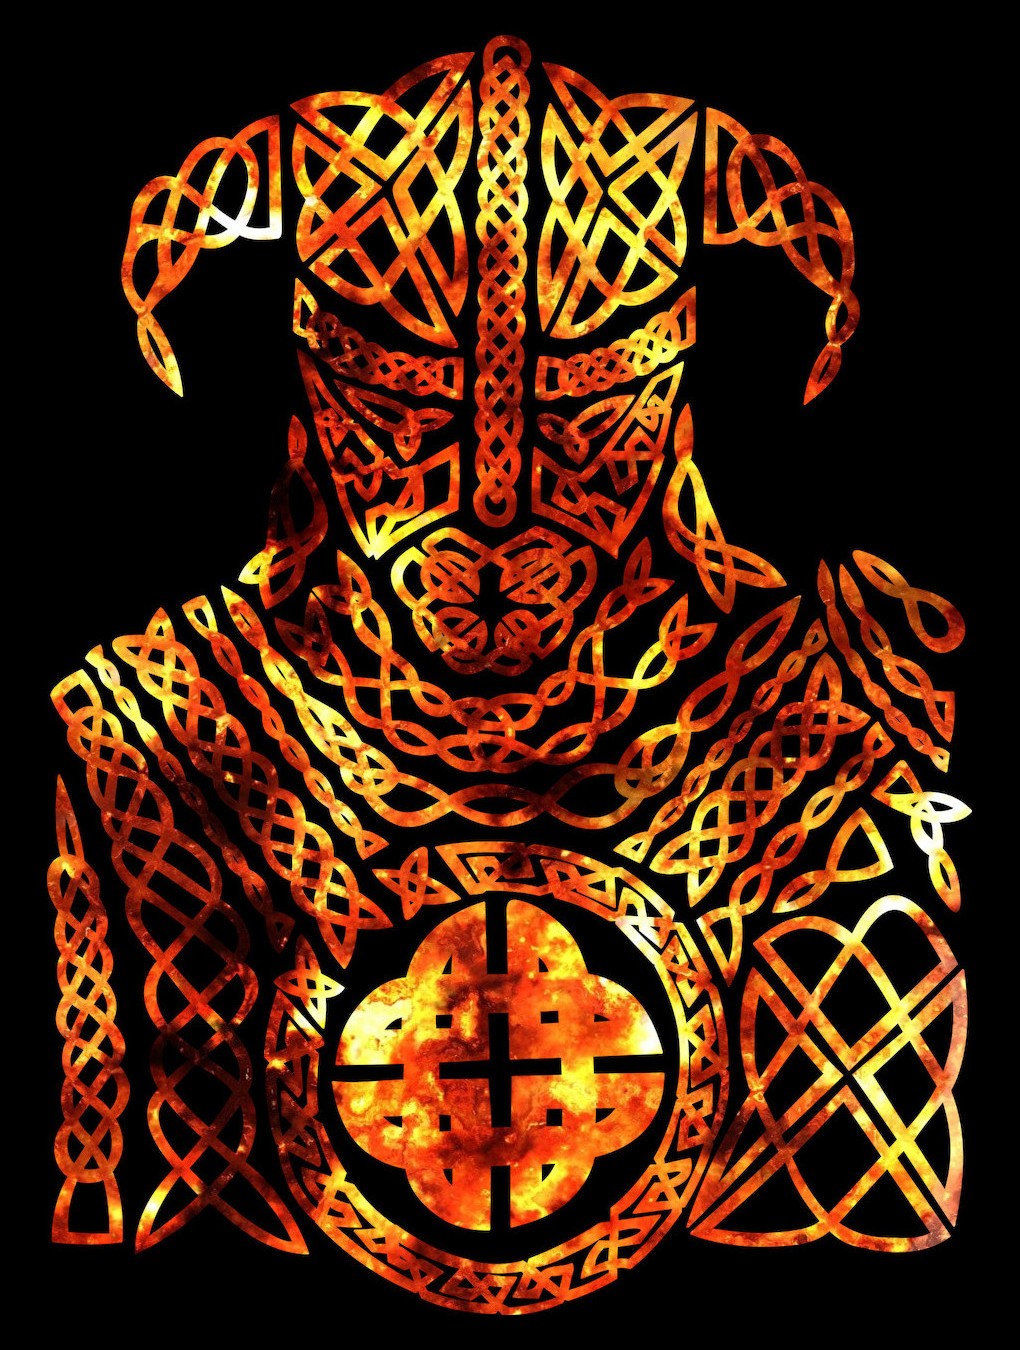 Sobre fondo negro, la imagen de un vikingo (sí, con cuernos) hecho ha base de trazos tipo "tribal" y en llamas. A la izquierda se lee, en vertical y con tipografía blanca que simula runas, "DIOSES DE", y a la derecha, de igual manera, "NUEVA ASGARD"